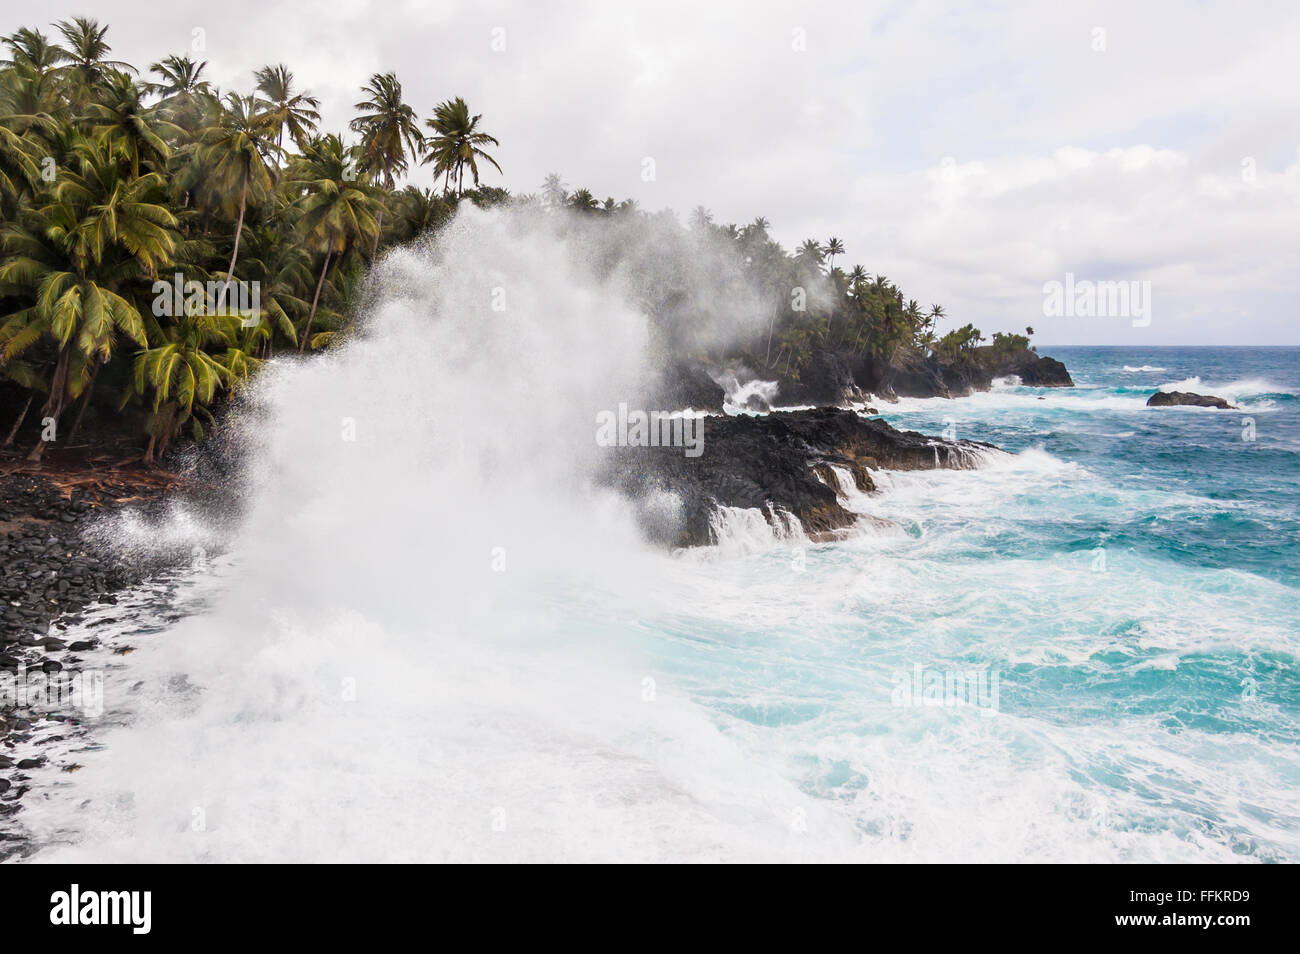 Grandi onde schiacciamento sulla riva di un'isola tropicale con palme durante una tempesta. Praia Piscina - Sao Tomè e Principe. Foto Stock